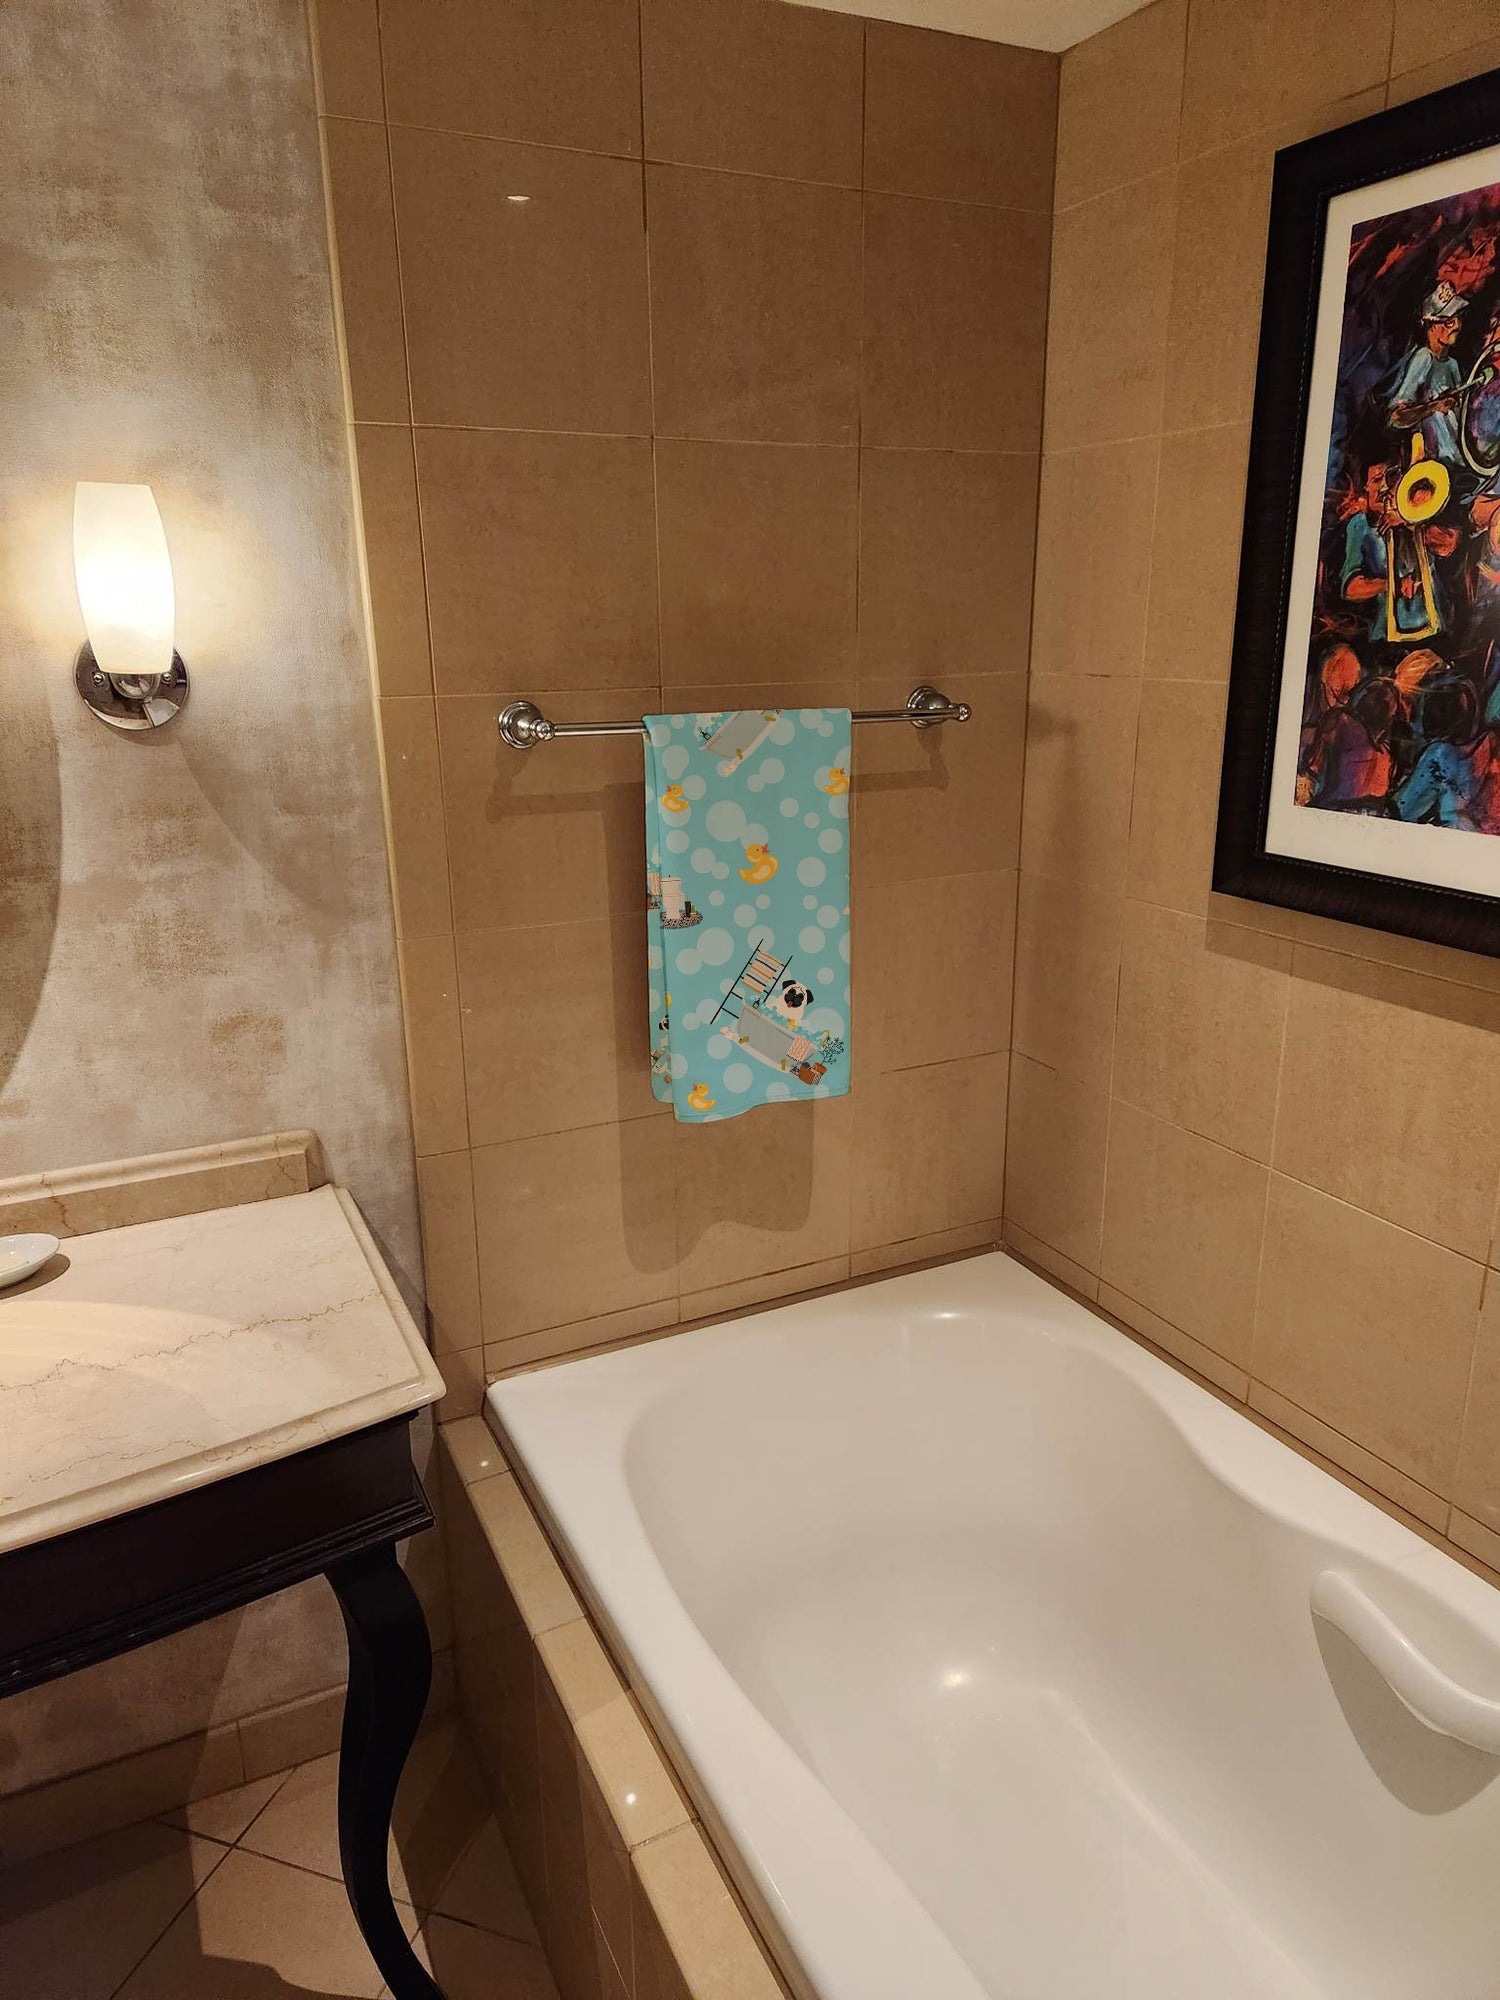 Cream Pug in Bathtub Bath Towel Large